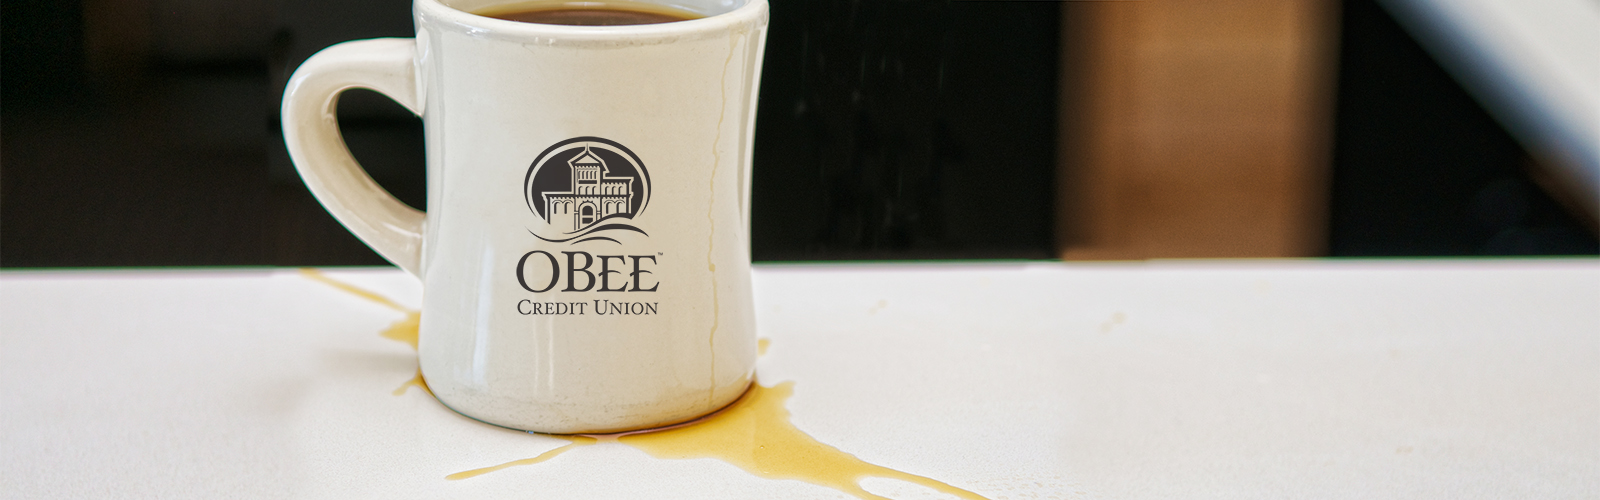 Coffee mug obee credit union in Olympia Washington